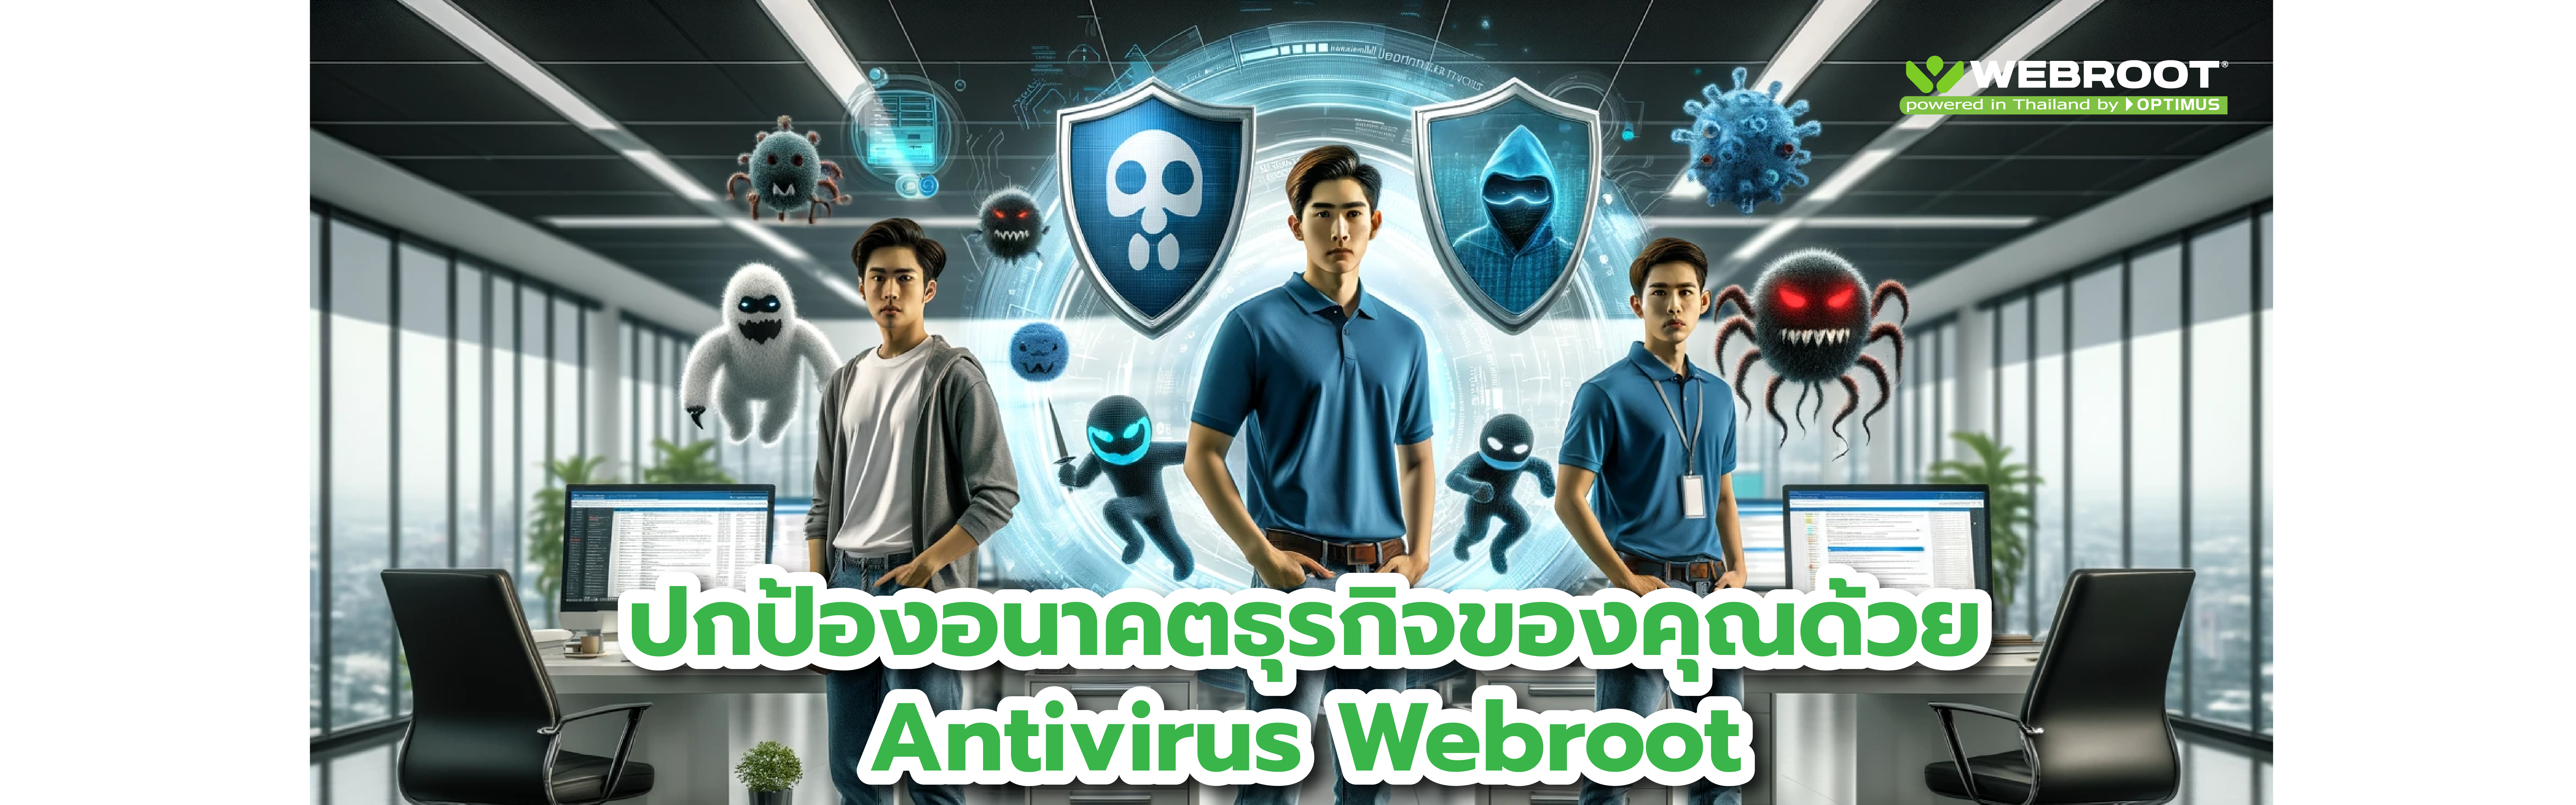 ปกป้องอนาคตธุรกิจของคุณด้วย Antivirus Webroot Antivirus ตรวจจับภัยคุกคามสำหรับองค์กรขนาดเล็กและกลาง